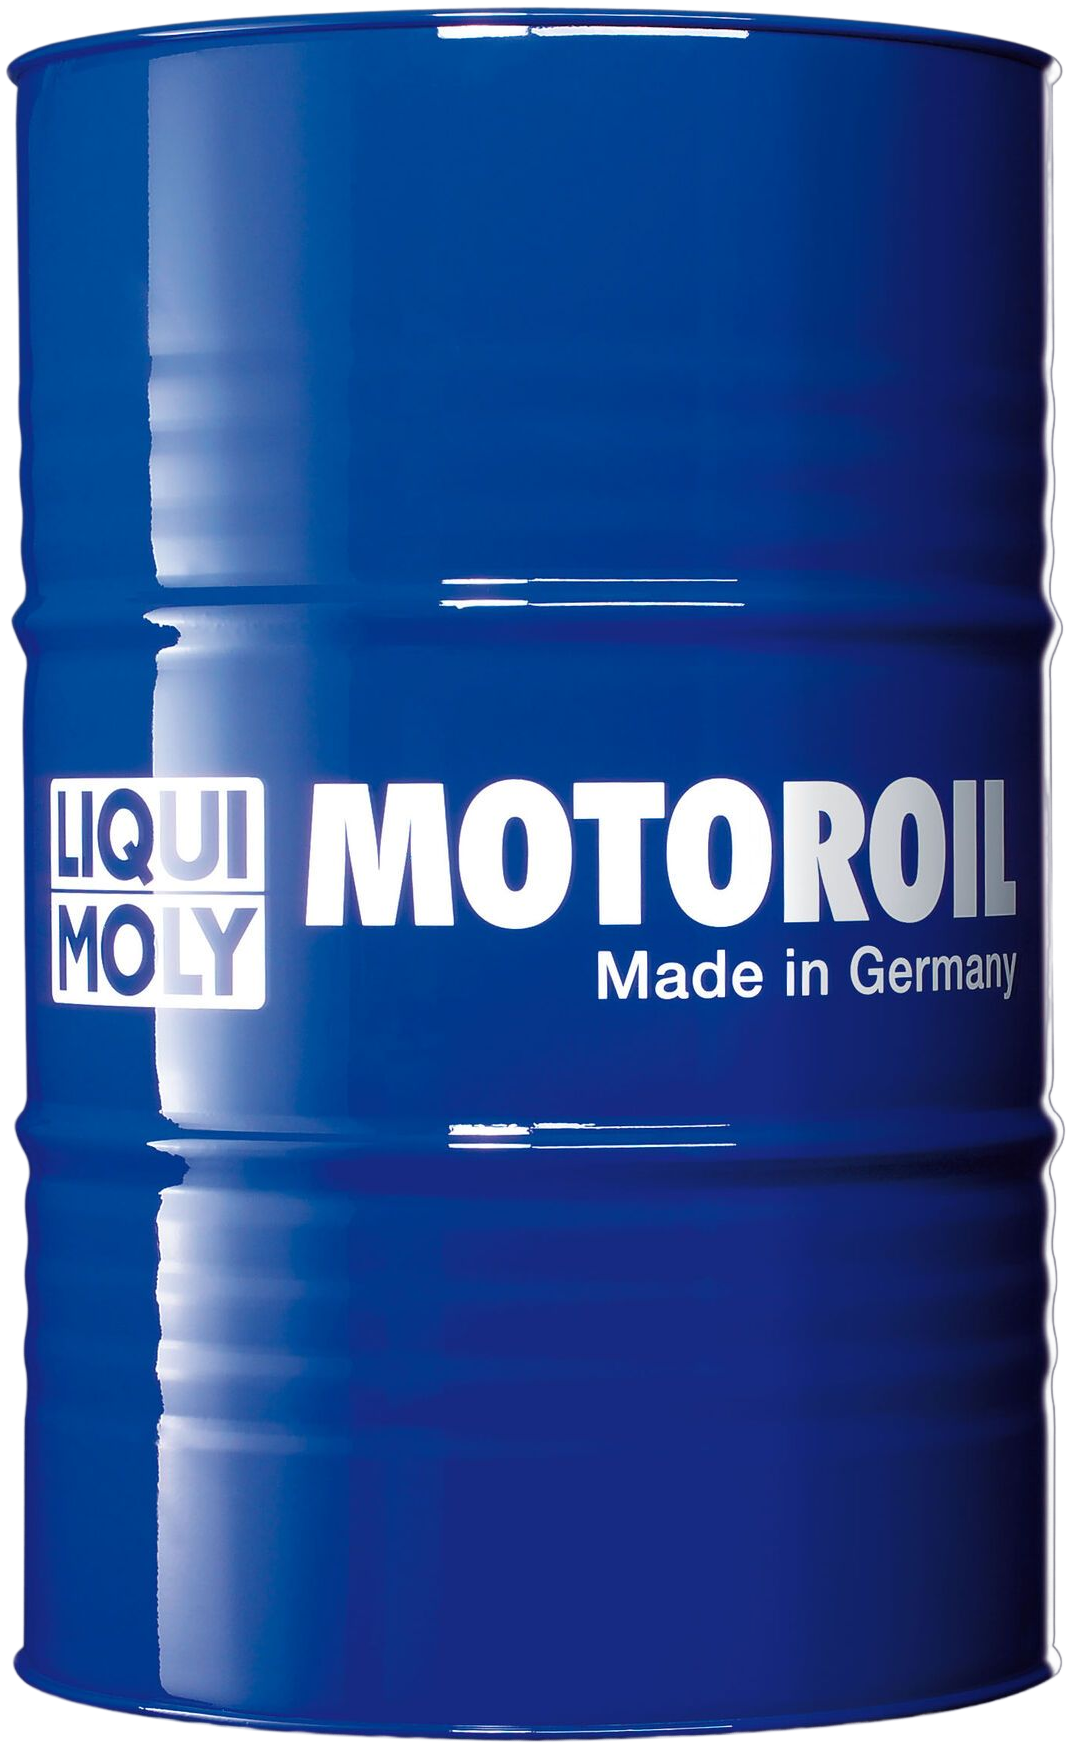 LM20659-205 Speciaal voor klassieke voertuigen en motorfietsen met oliefilterelementen, waarin een licht gelegeerd smeermiddel vereist is.